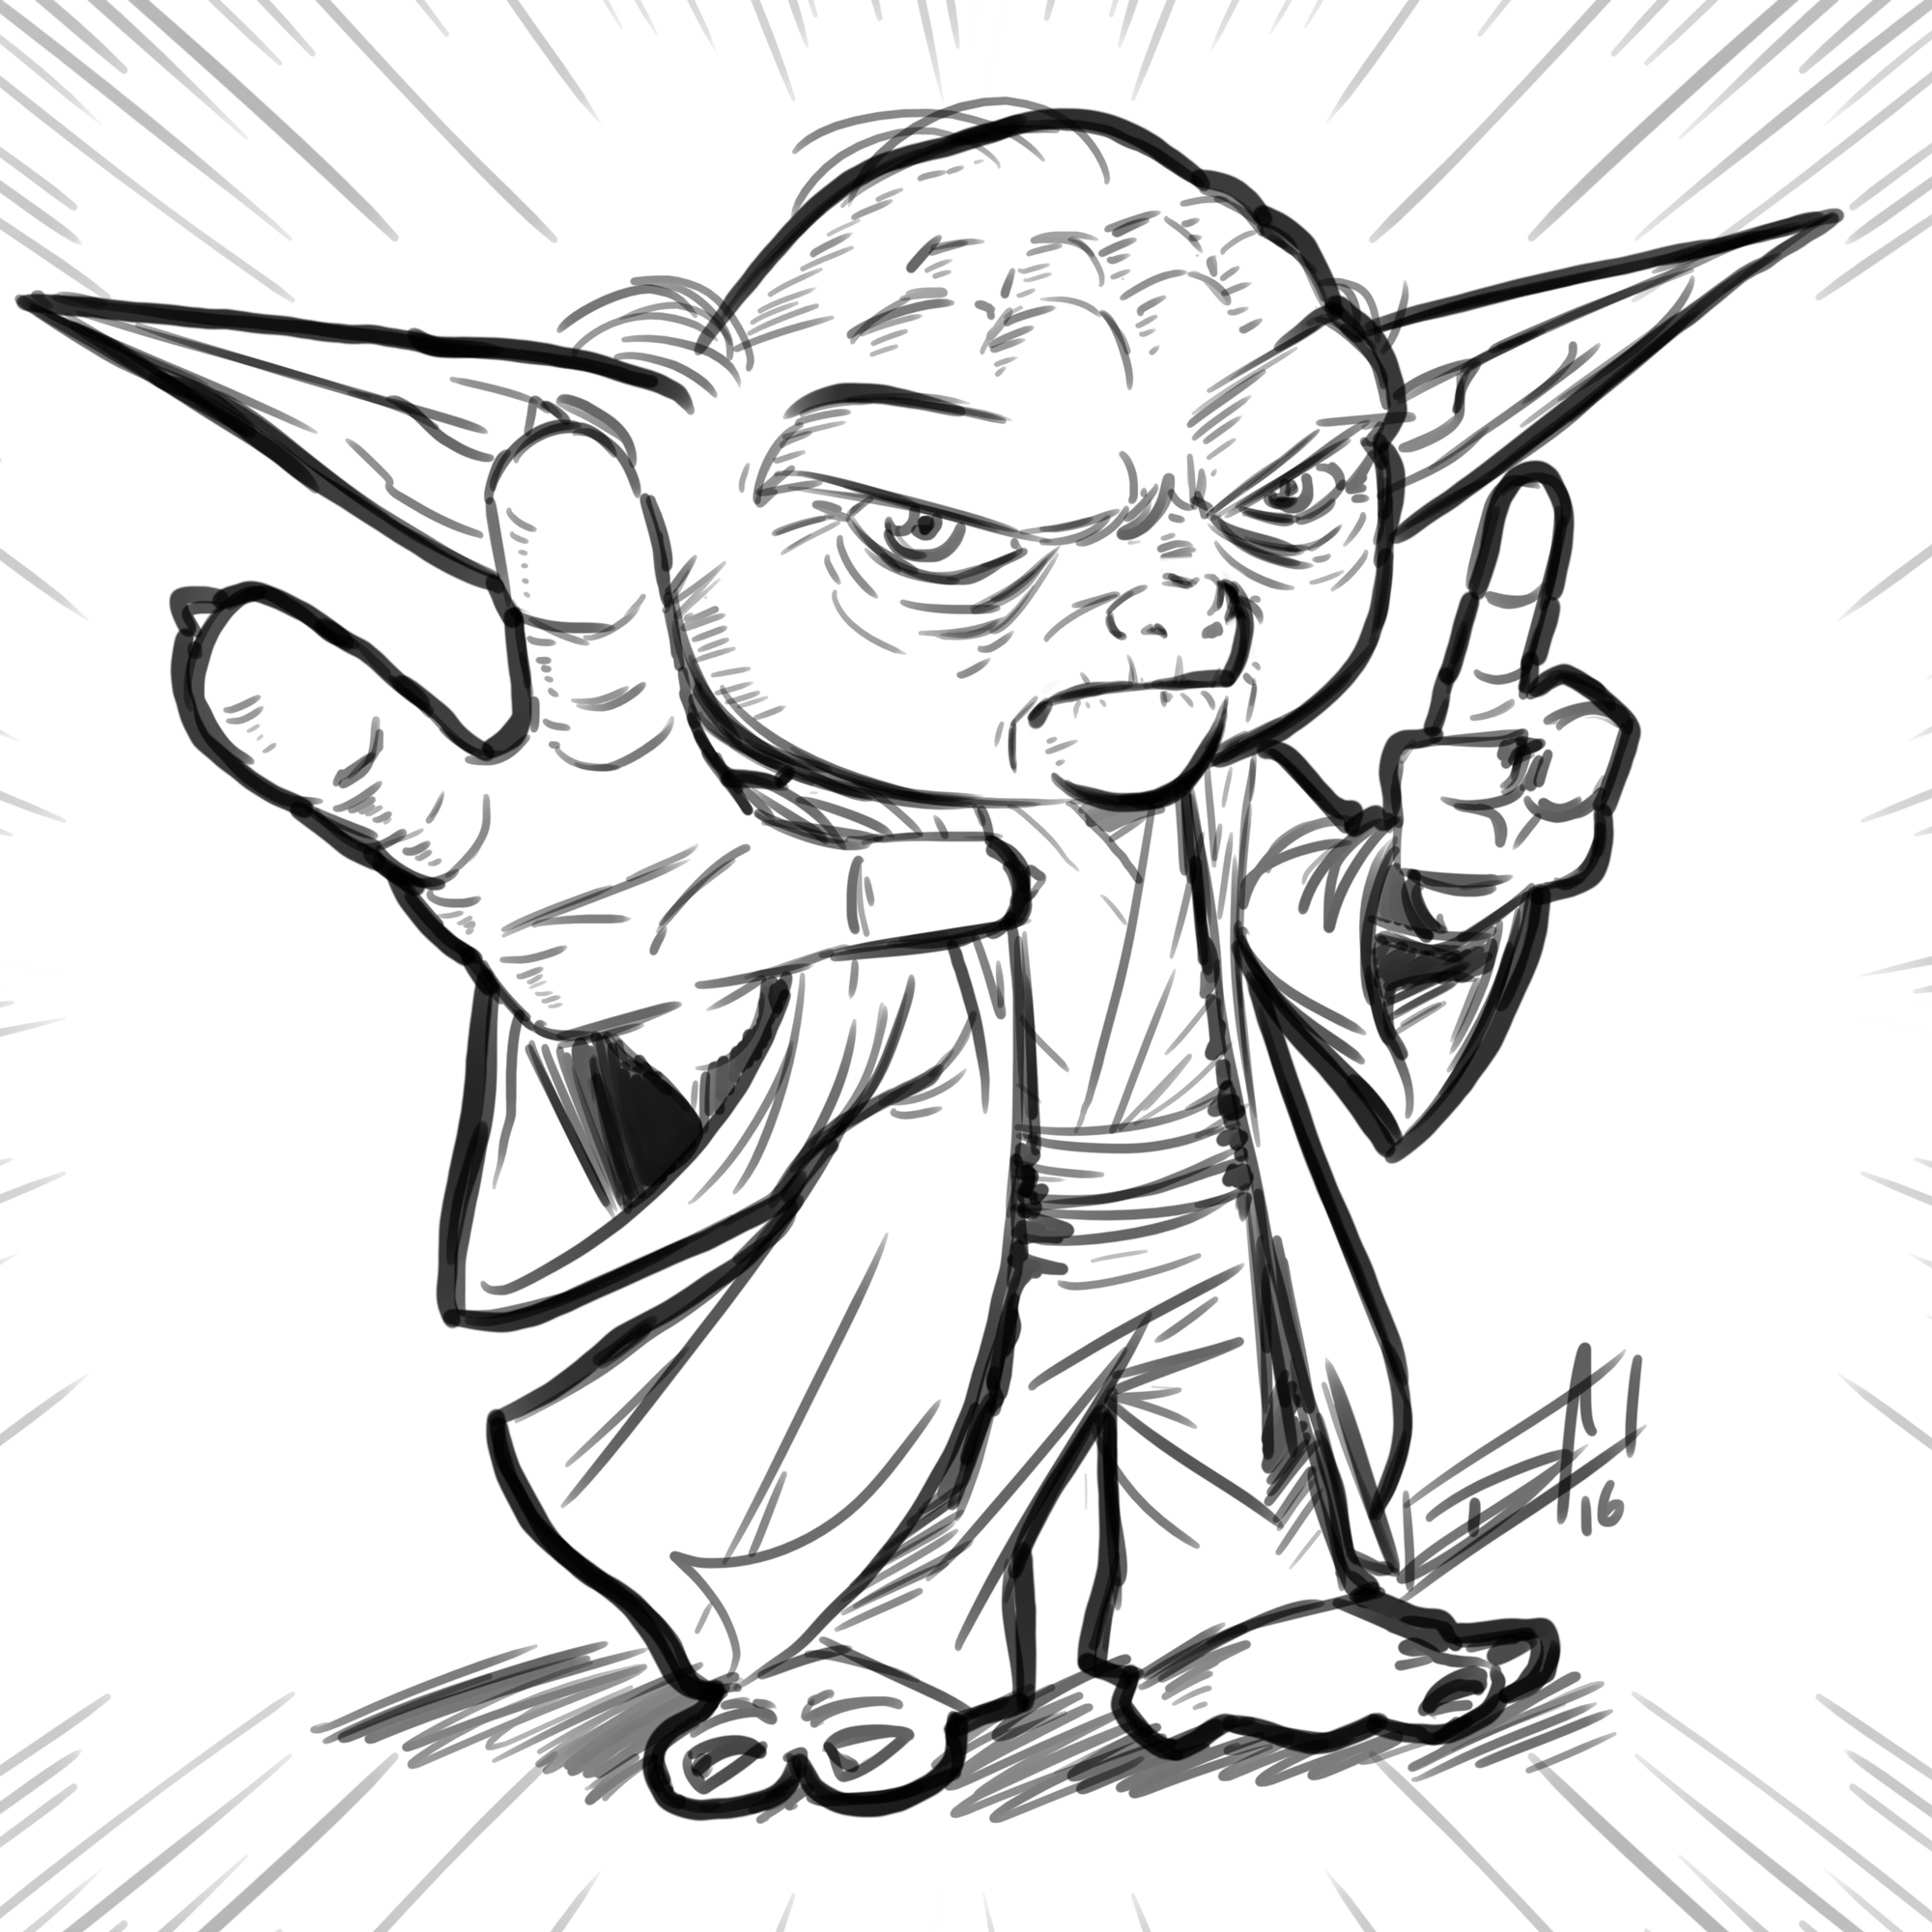 Master Yoda - sketch by Dan Arrows